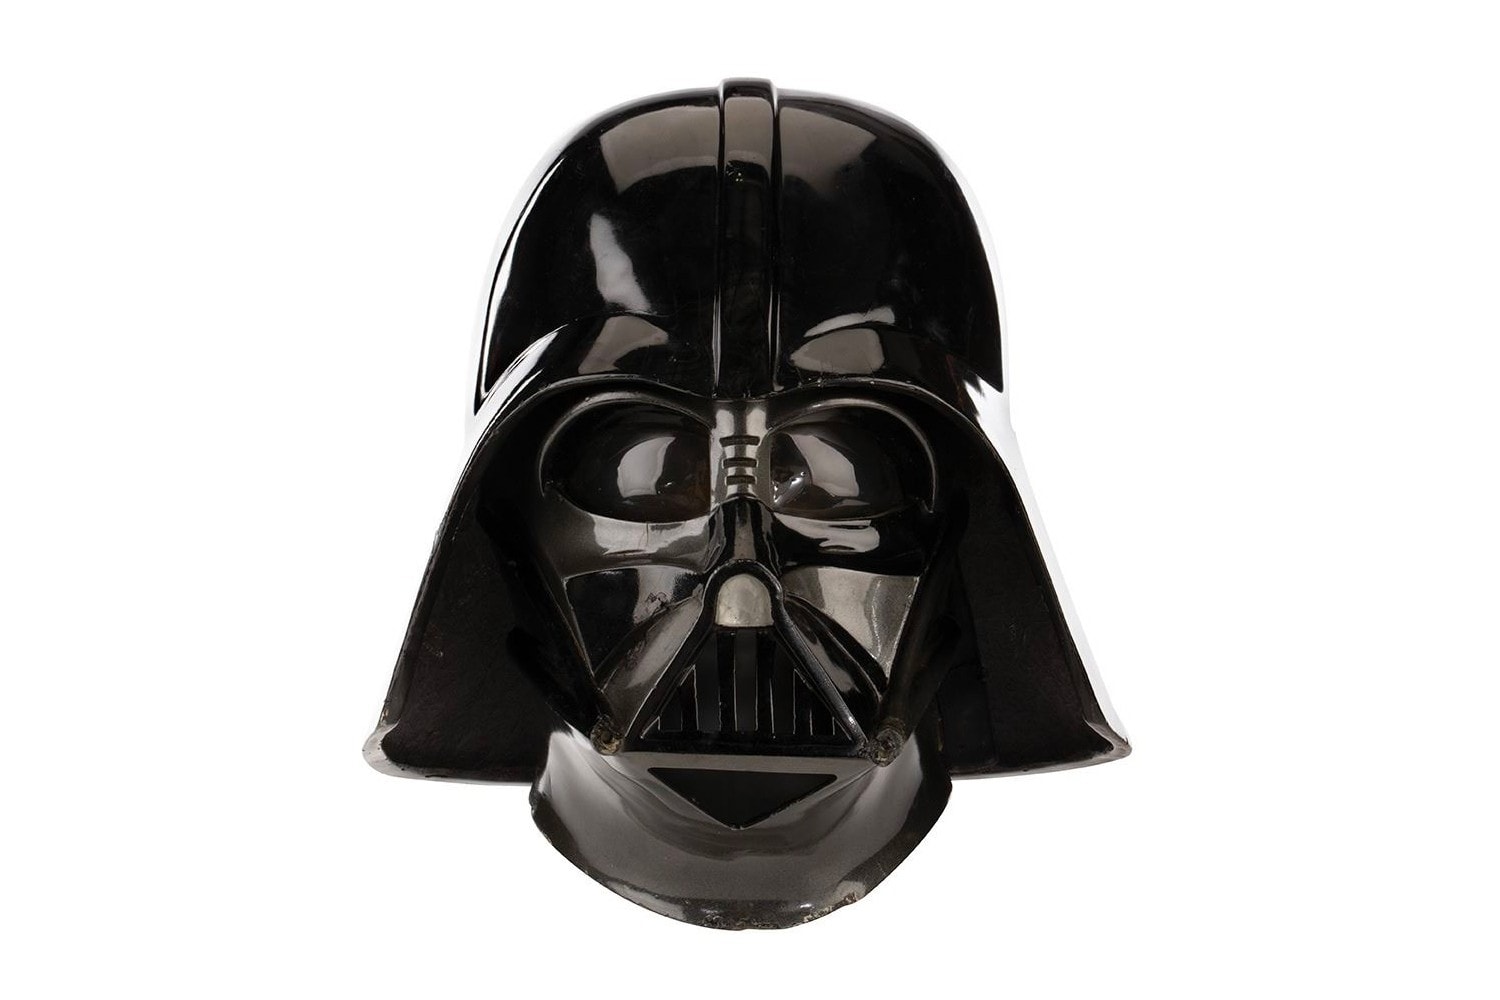 《Star Wars》電影元祖 Darth Vader 面罩頭盔正展開拍賣